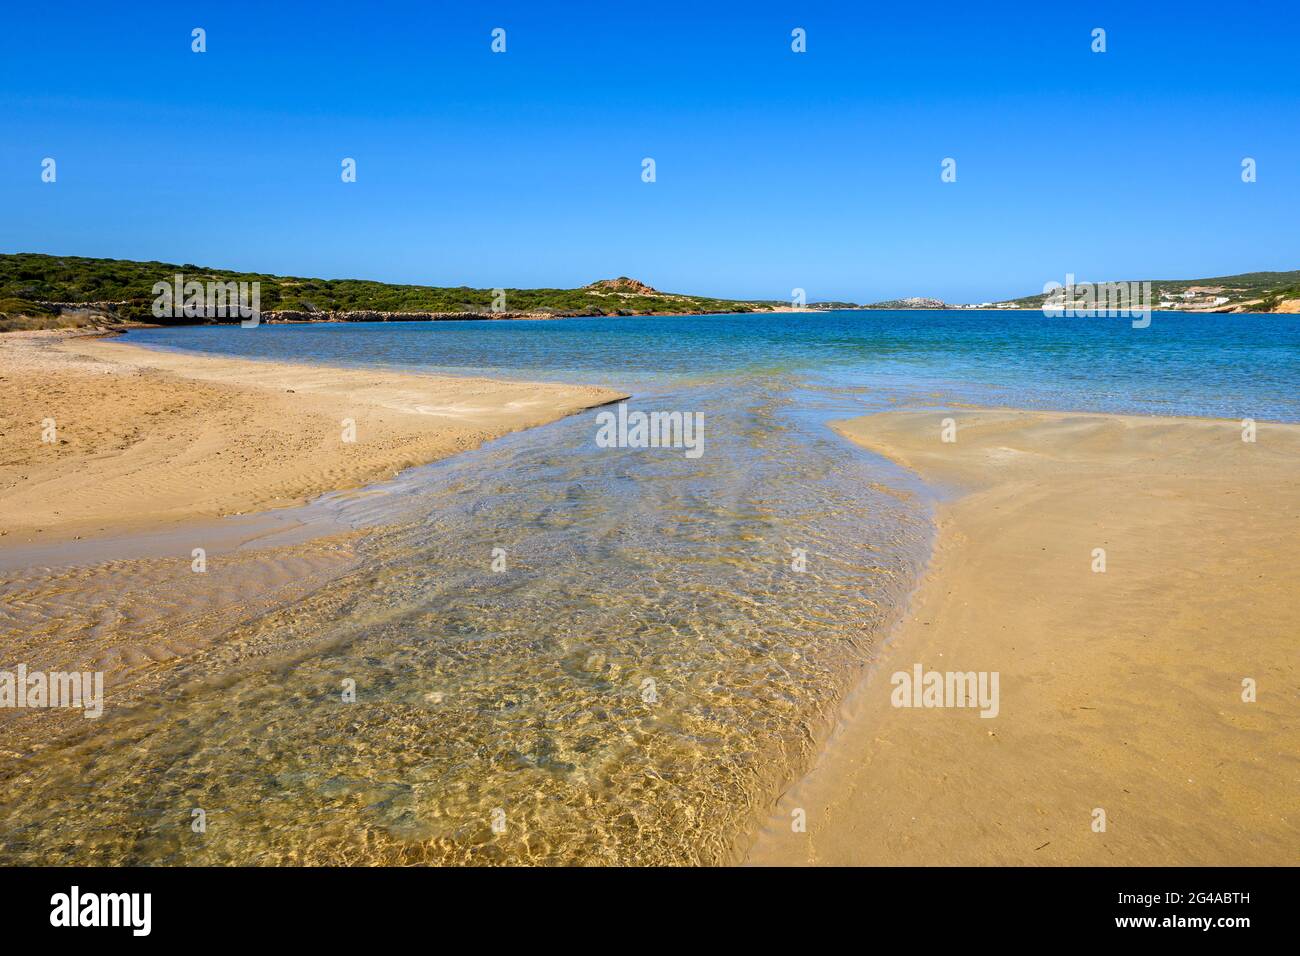 Stefano Beach con una striscia di sabbia che collega l'Isola di Paros con l'isolotto di Oikonomou. Questa spiaggia isolata si trova tra Naoussa e Santa Foto Stock